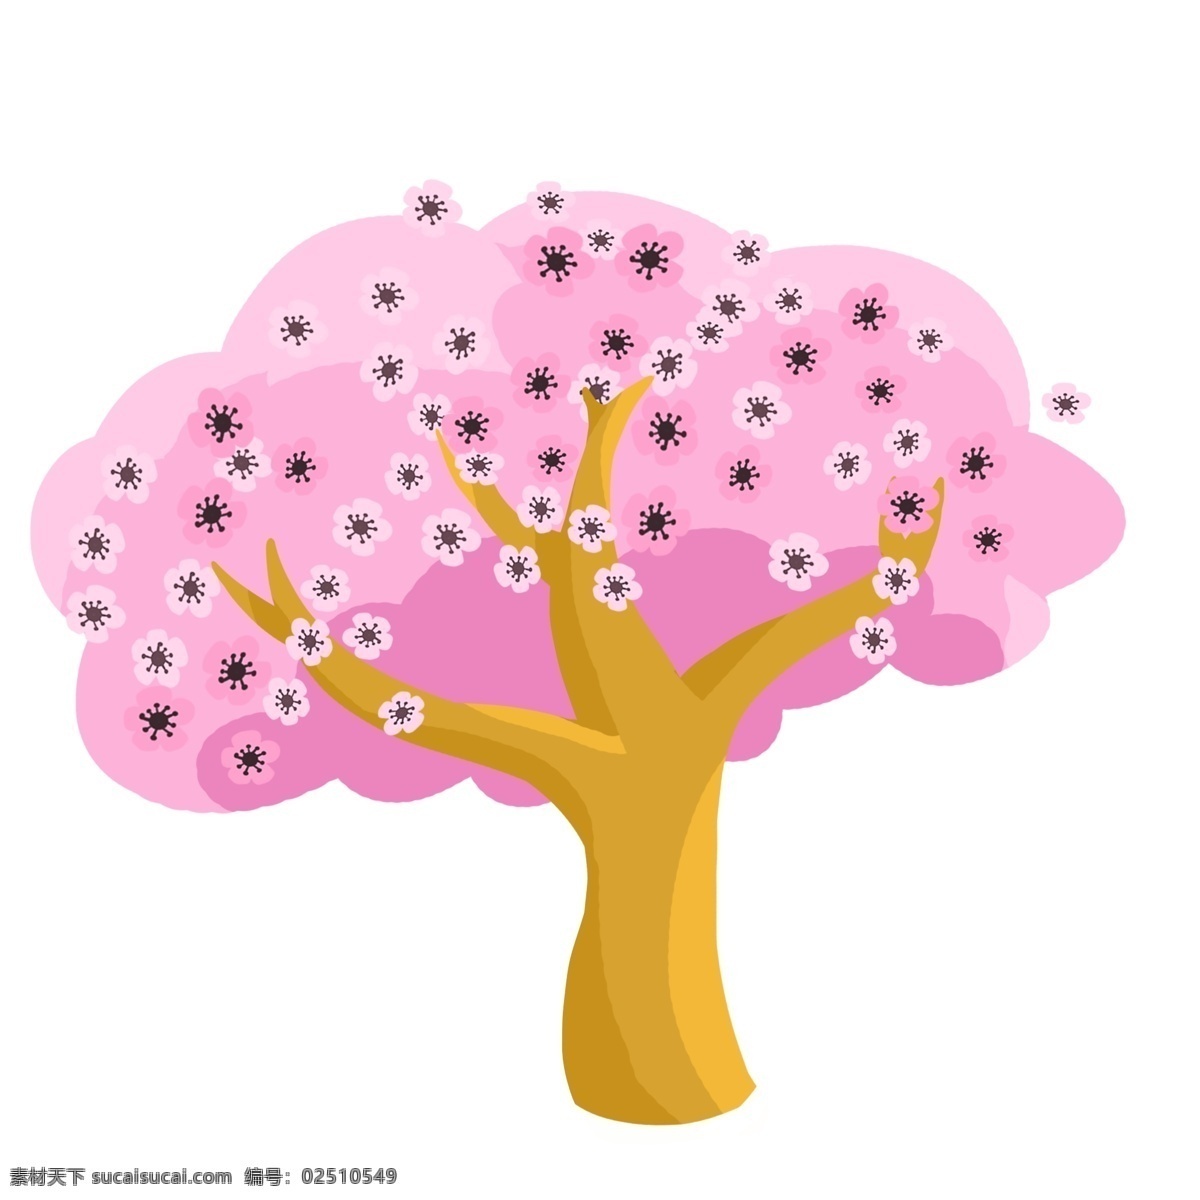 樱花树 免 抠 粉红色 樱花 花朵 树干 简单 简洁 插画 原创手绘 卡通樱花 花蕊 树木 浪漫樱花树